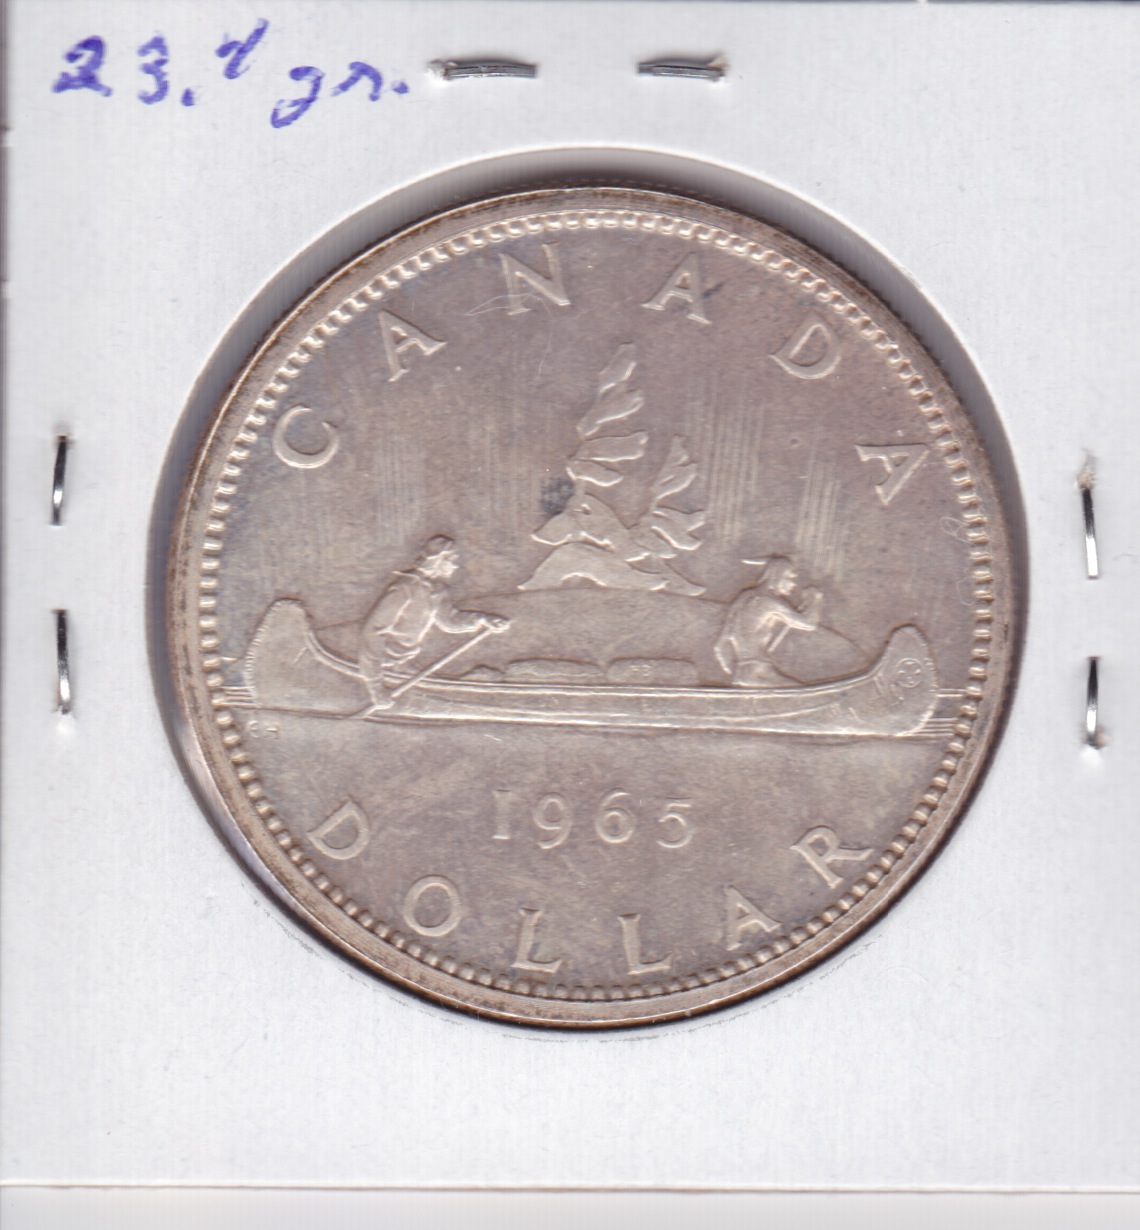 1 dollar 1965 Petites Perles 5 droit - verso.jpeg